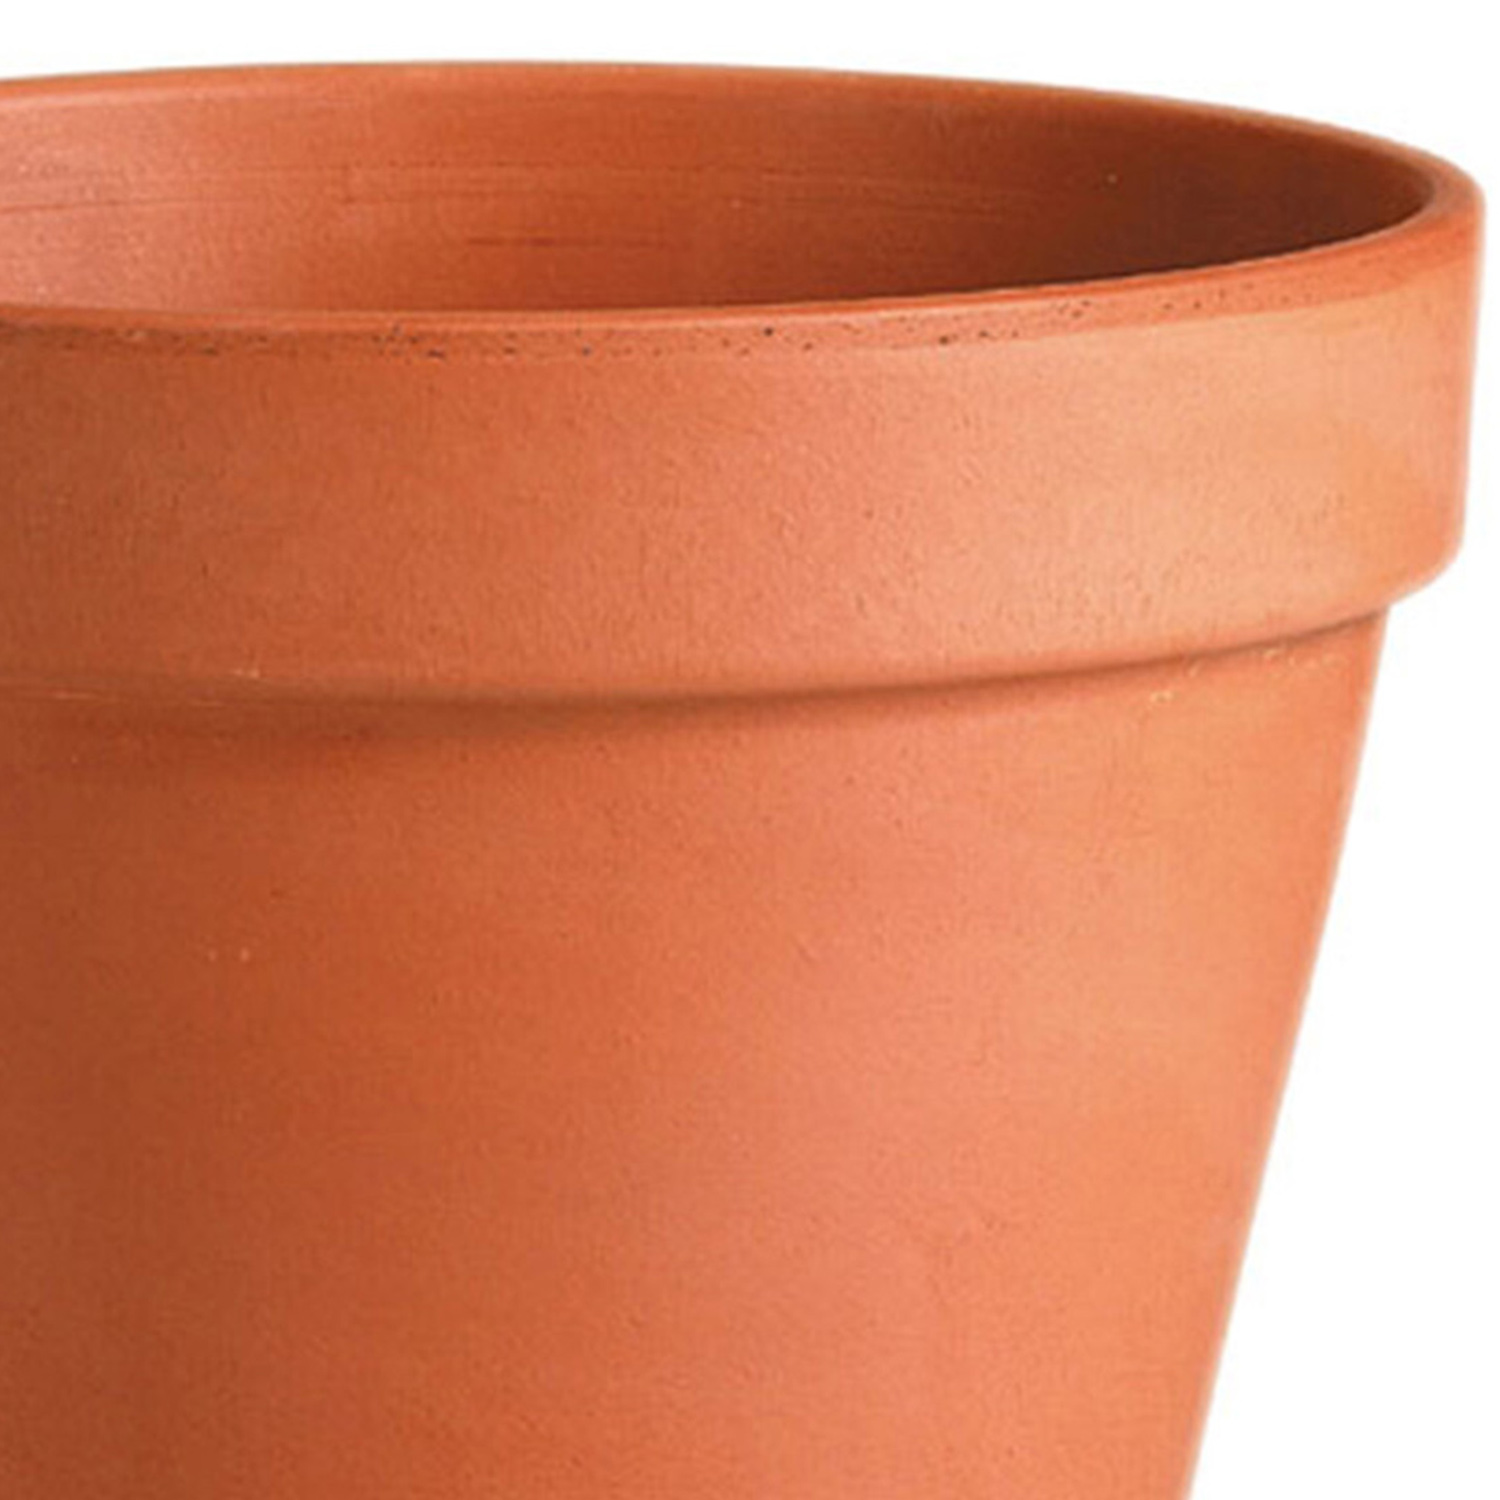 Terracotta Plant Pot 22cm Image 2